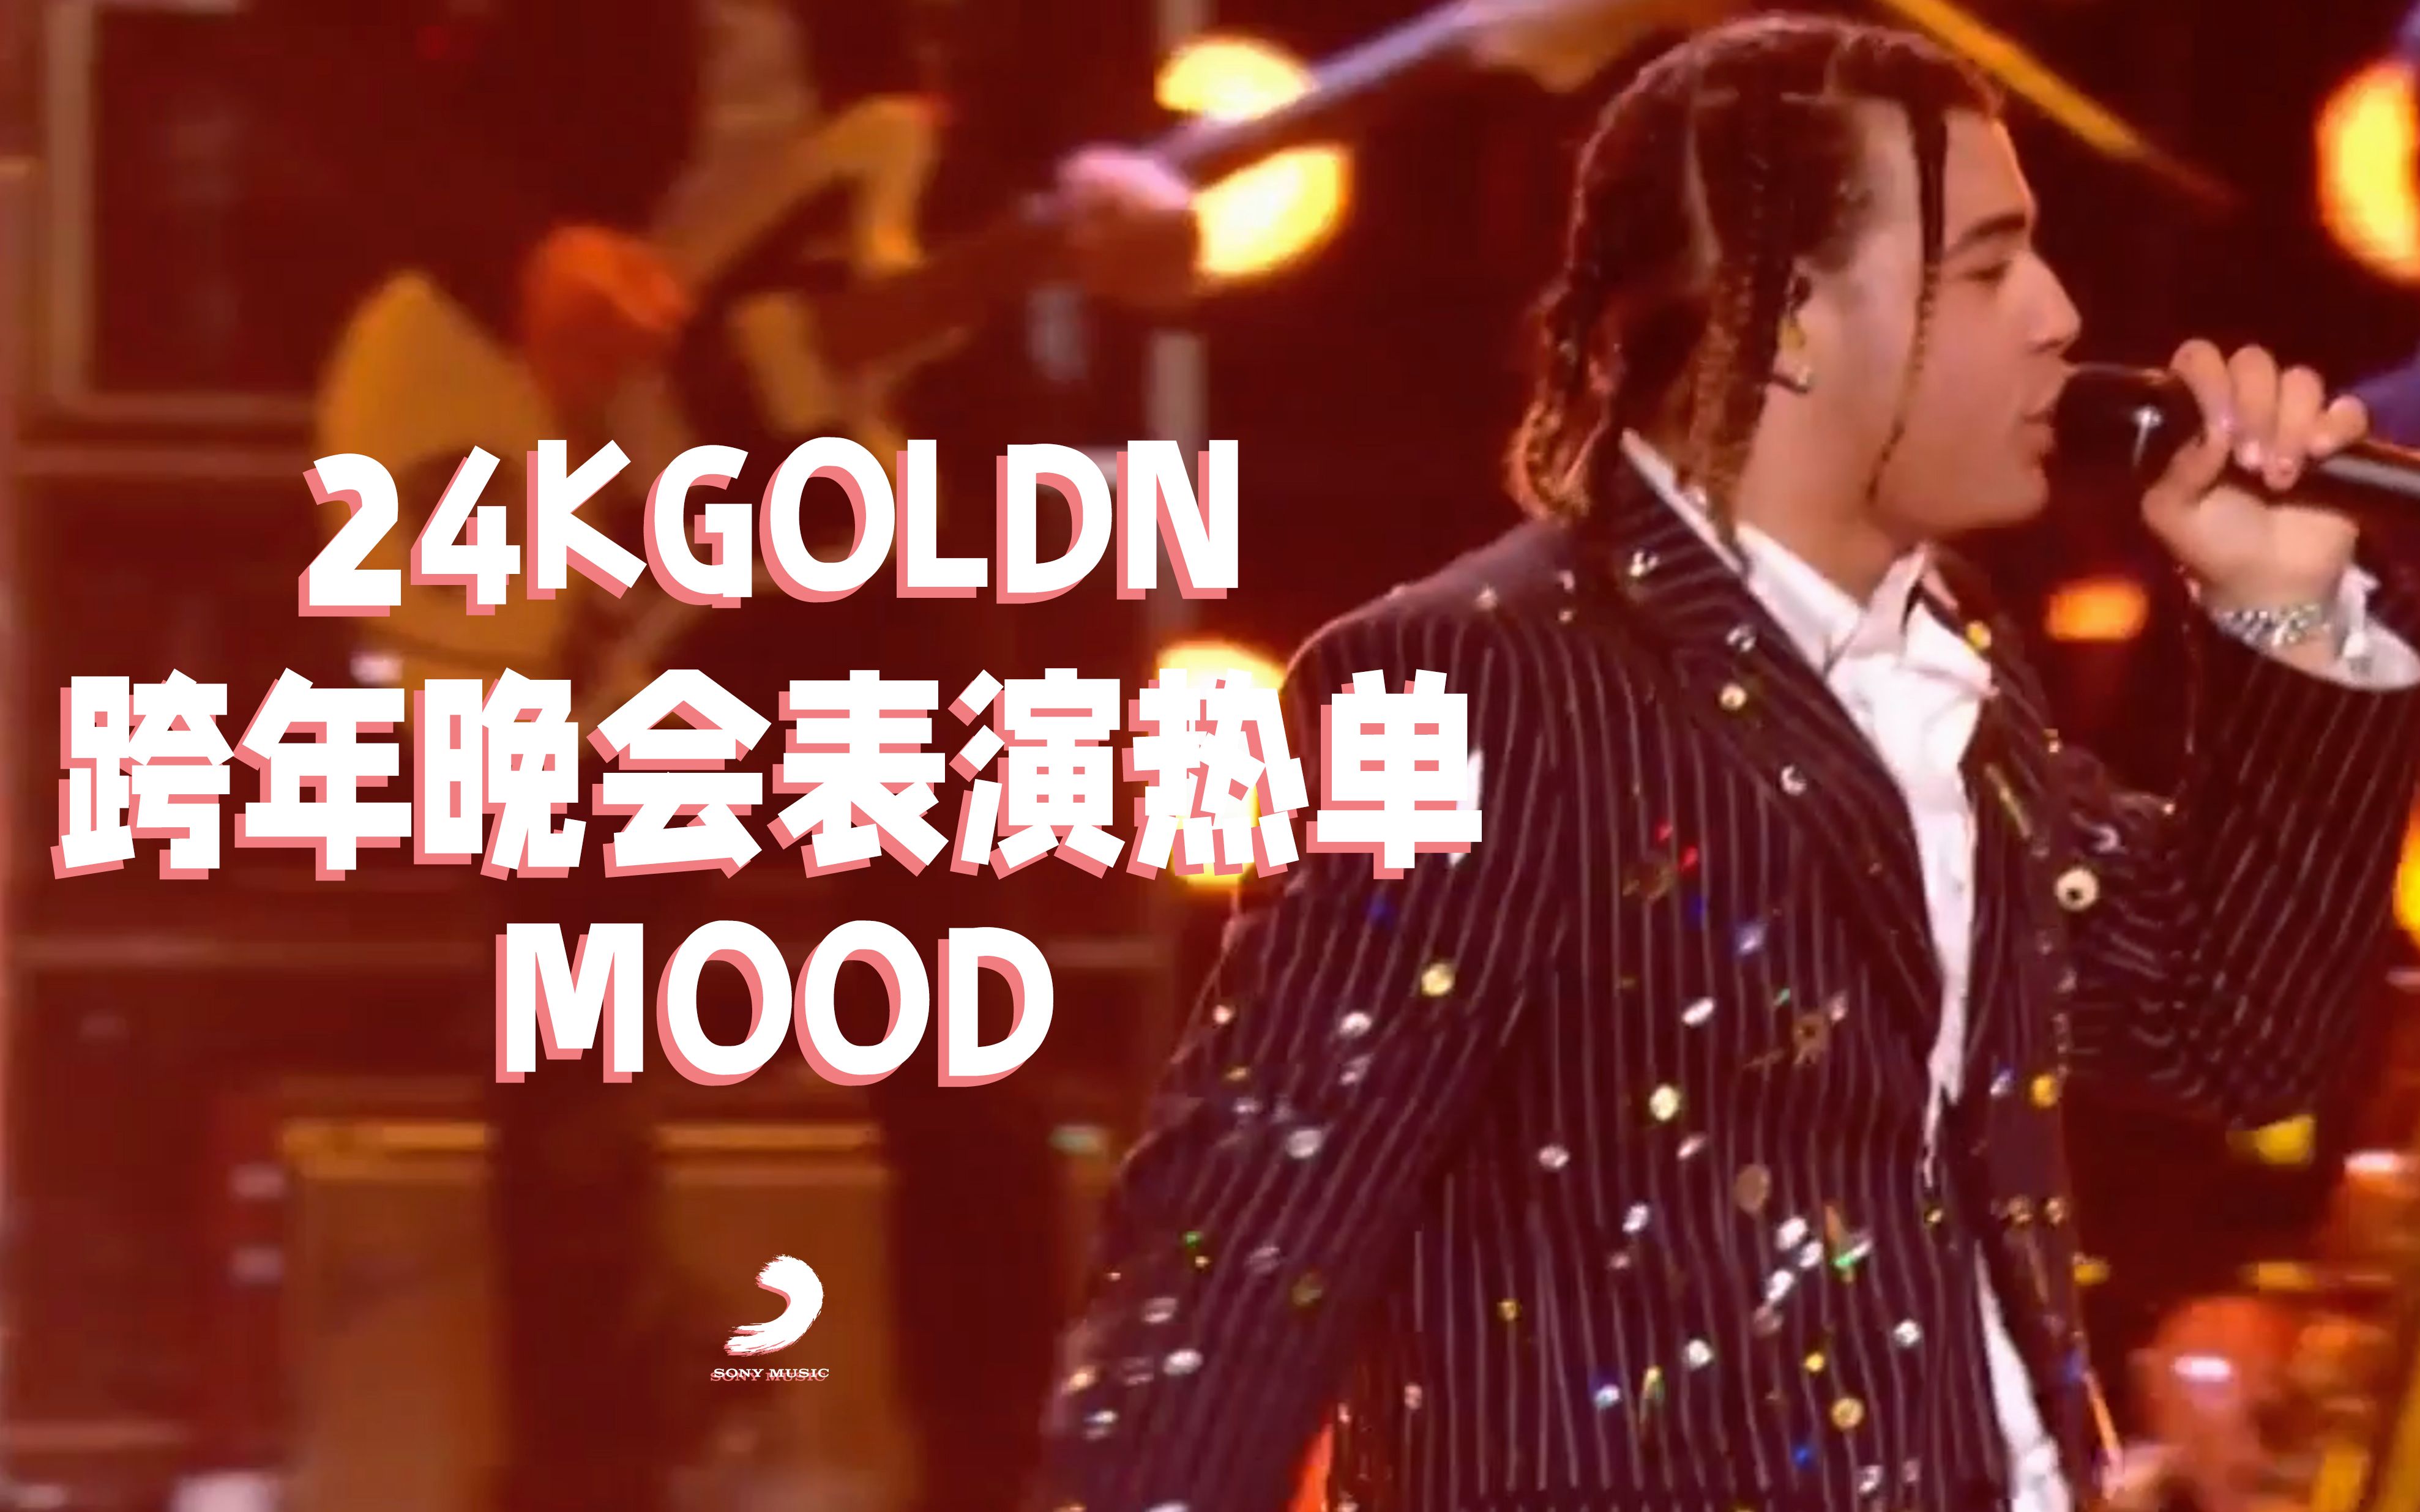 【中字现场】24kGoldn跨年晚会表演热单《Mood》